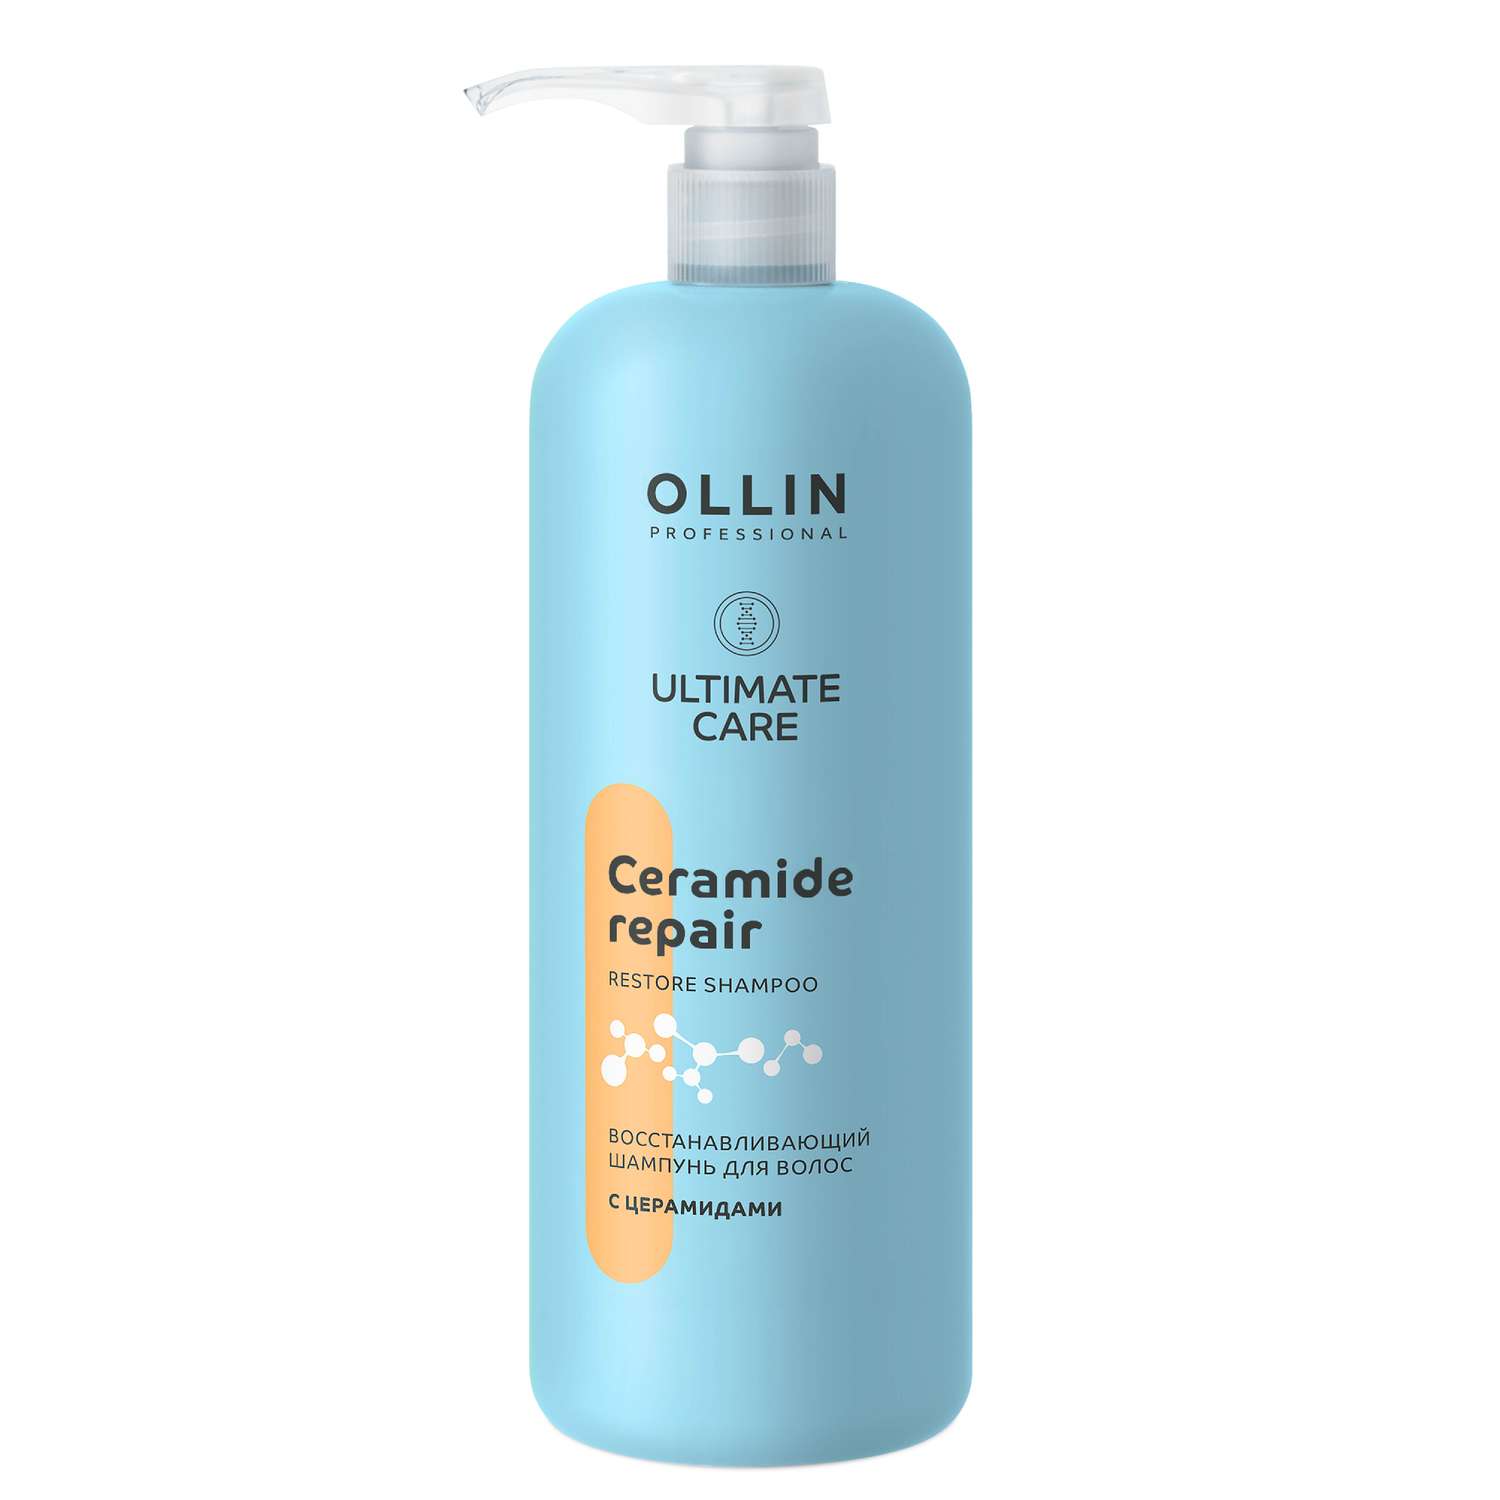 Шампунь Ollin ultimate care для восстановления волос с церамидами 1000 мл - фото 1